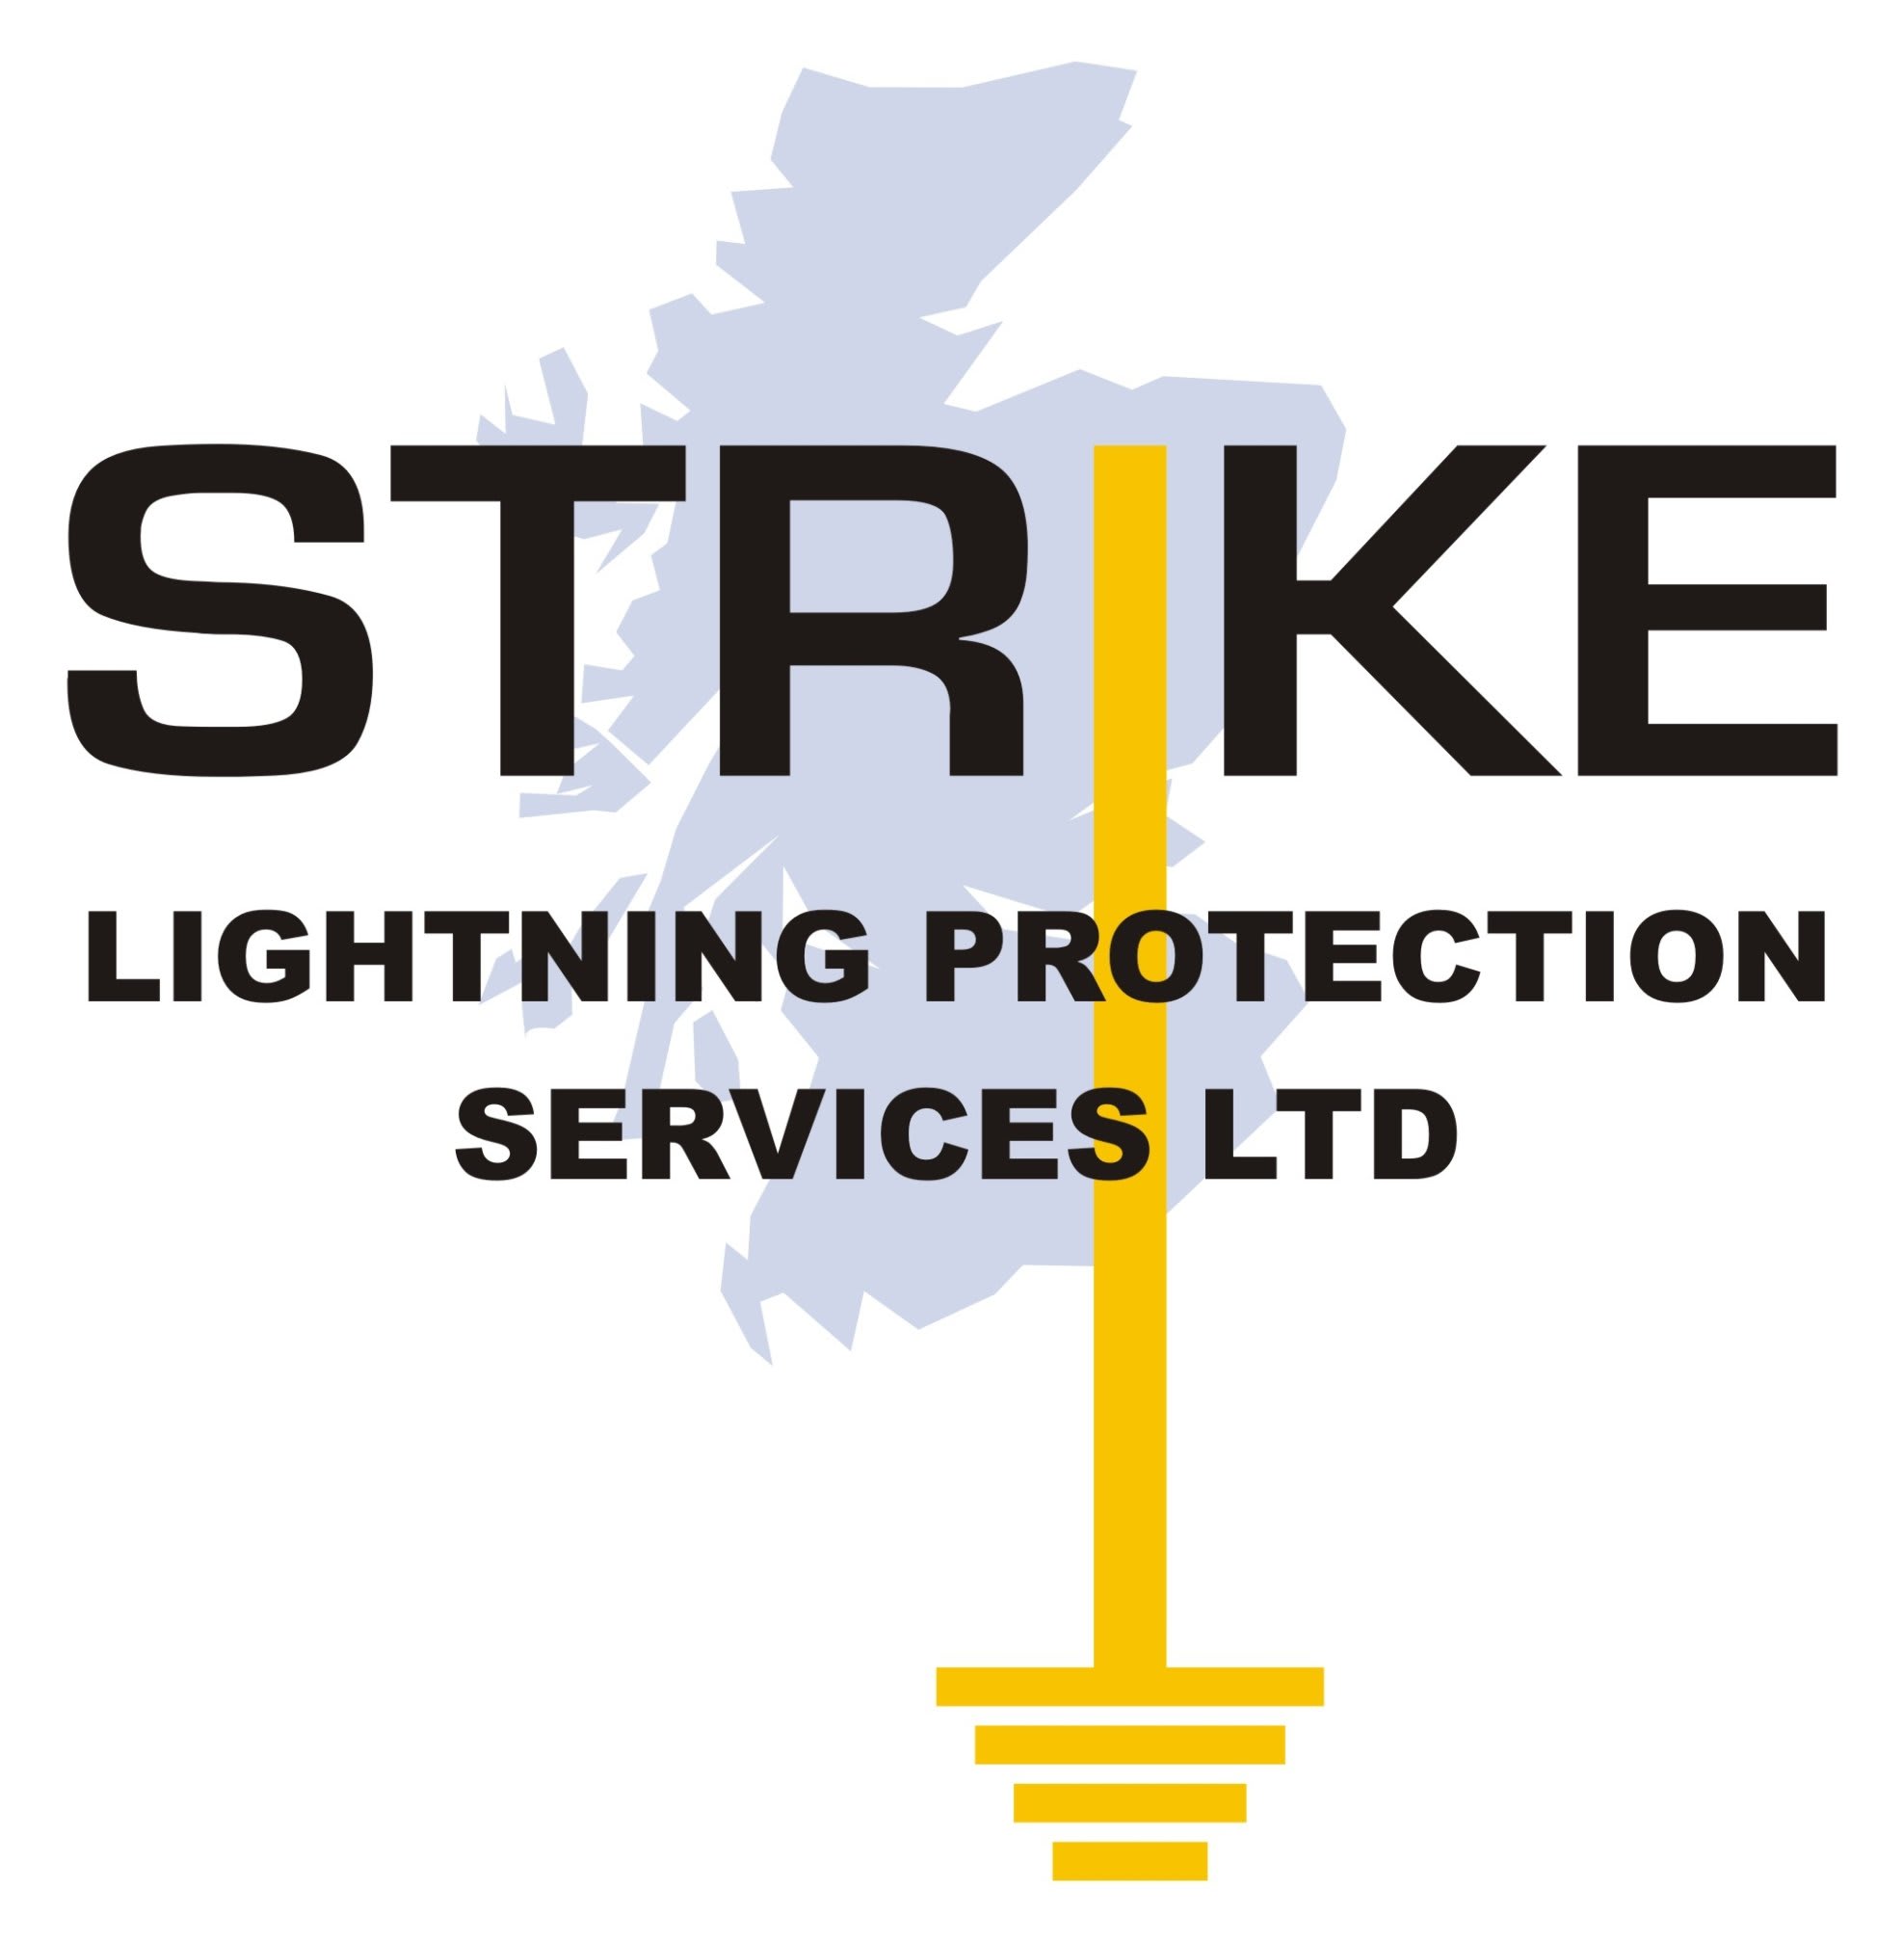 Images Strike Lightning Protection Services Ltd